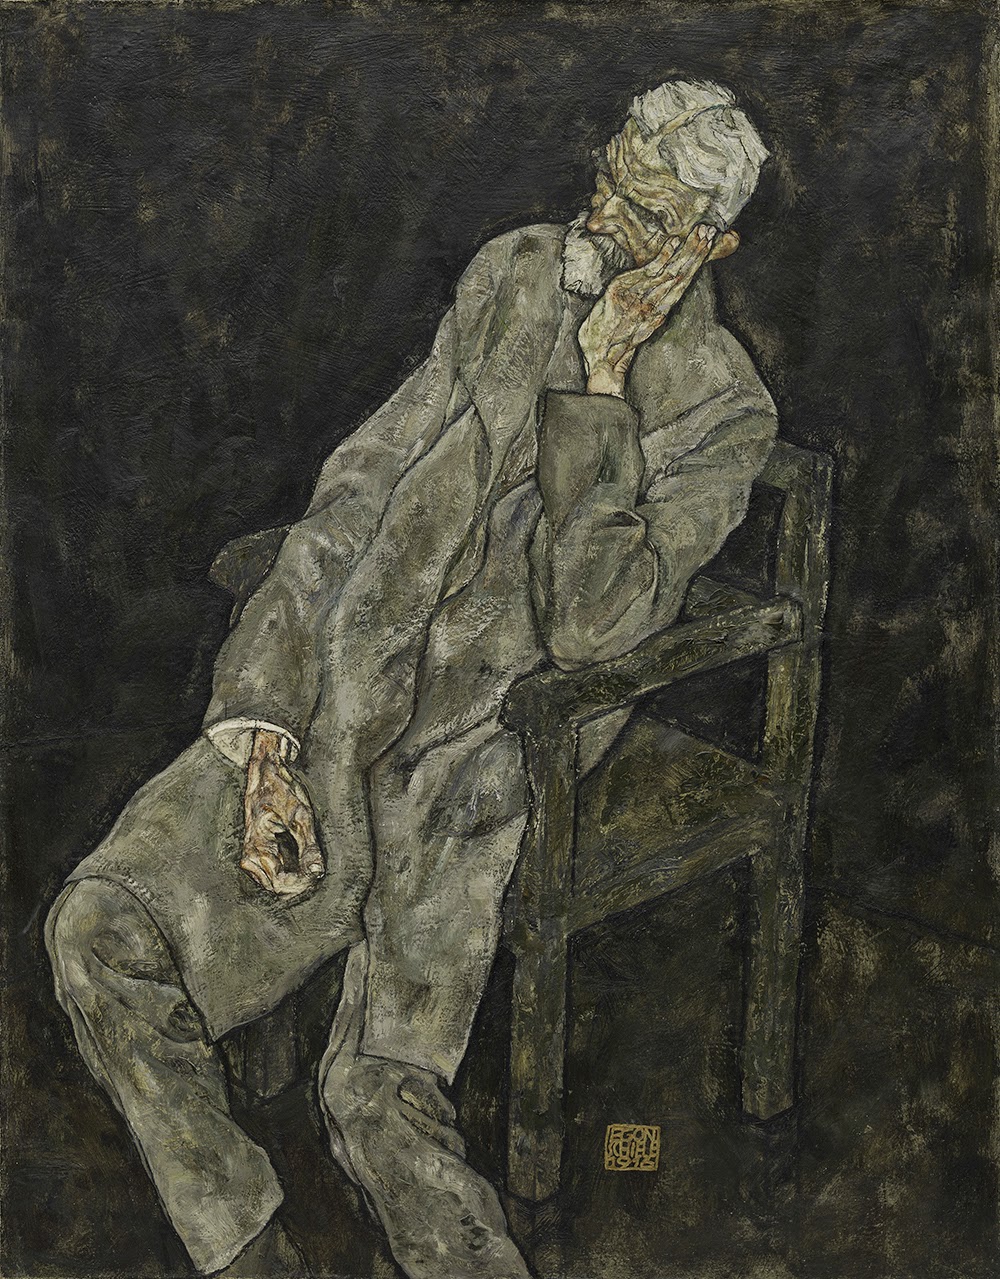 Egon+Schiele-1890-1918 (13).jpg